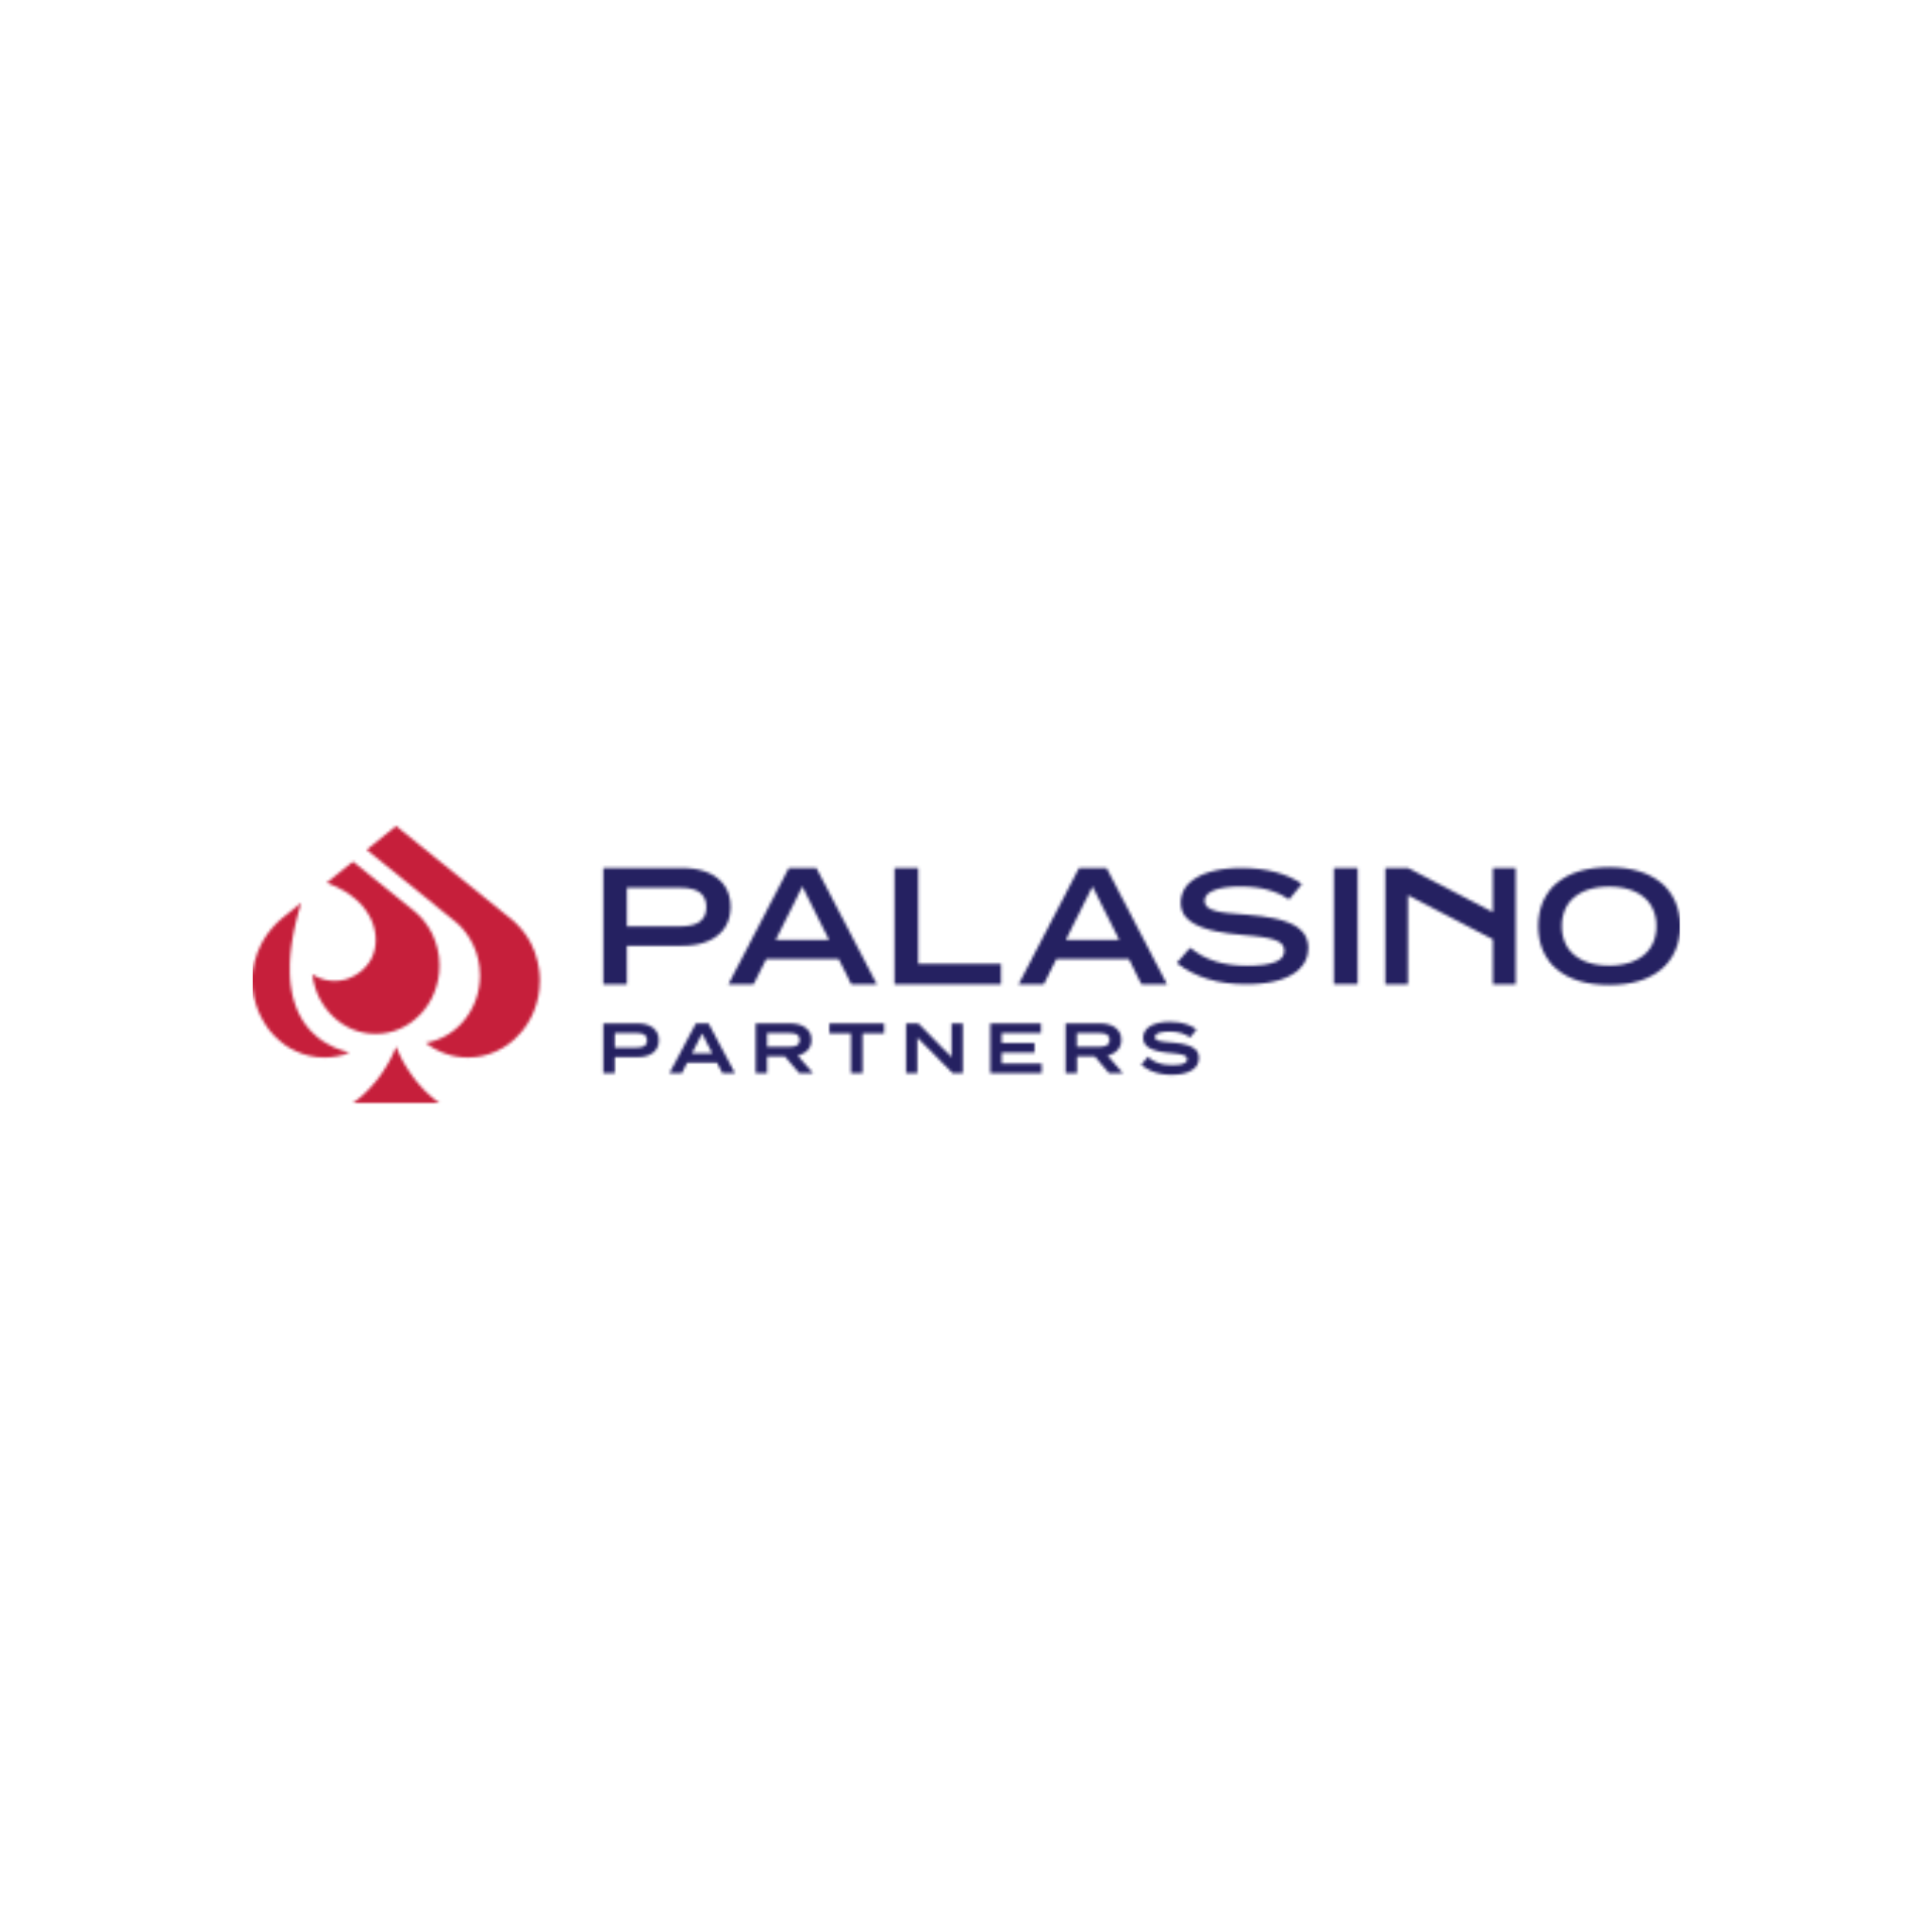 Palasino Partners